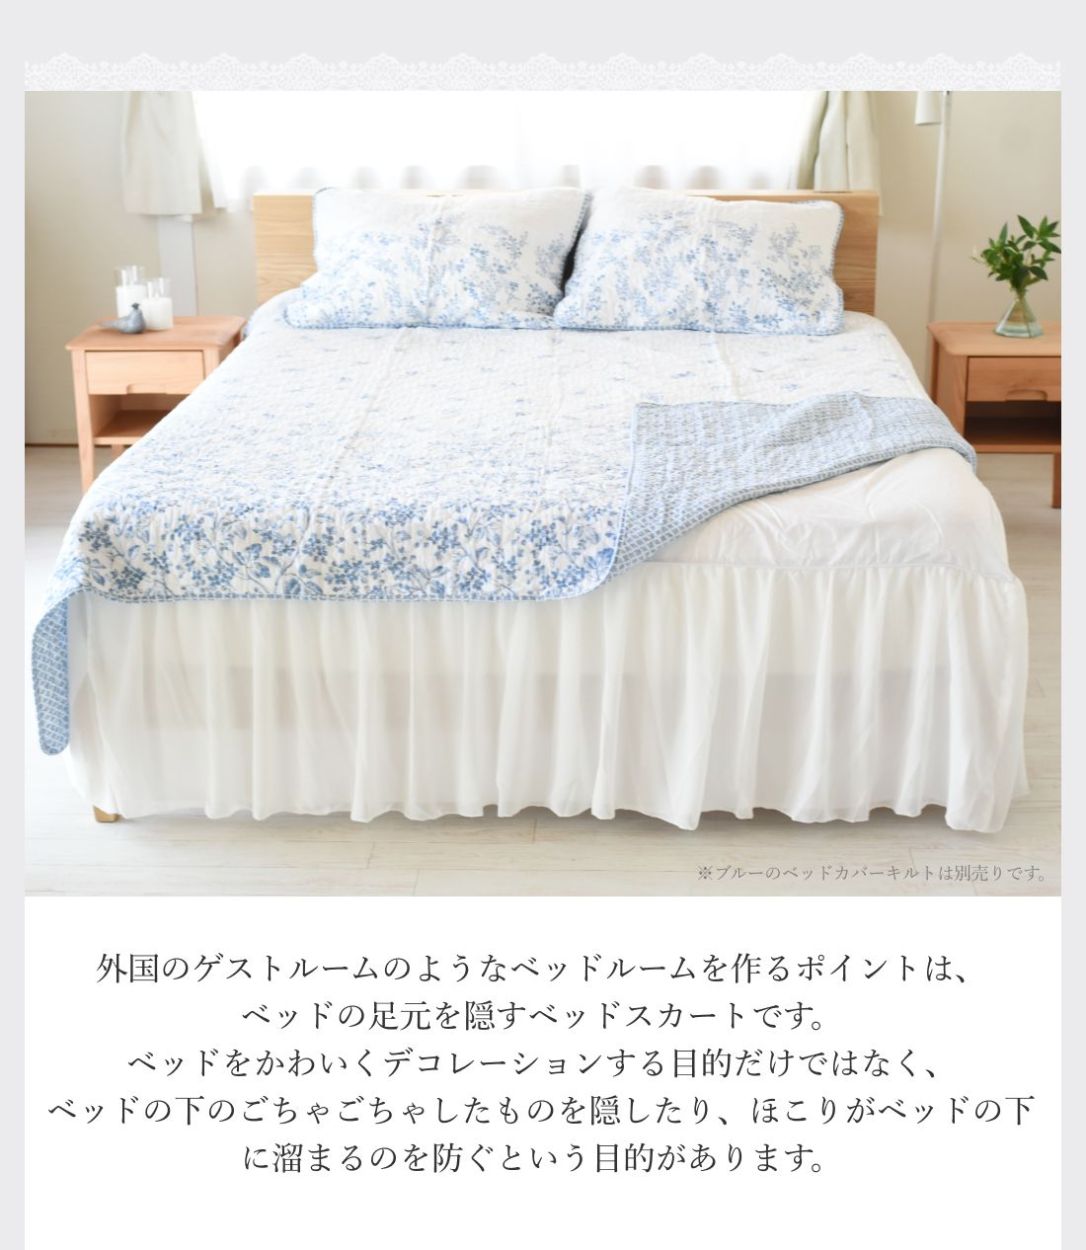 外国のゲストルームのようなベッドルームを作るポイントは、ベッドの足元を隠すベッドスカートです